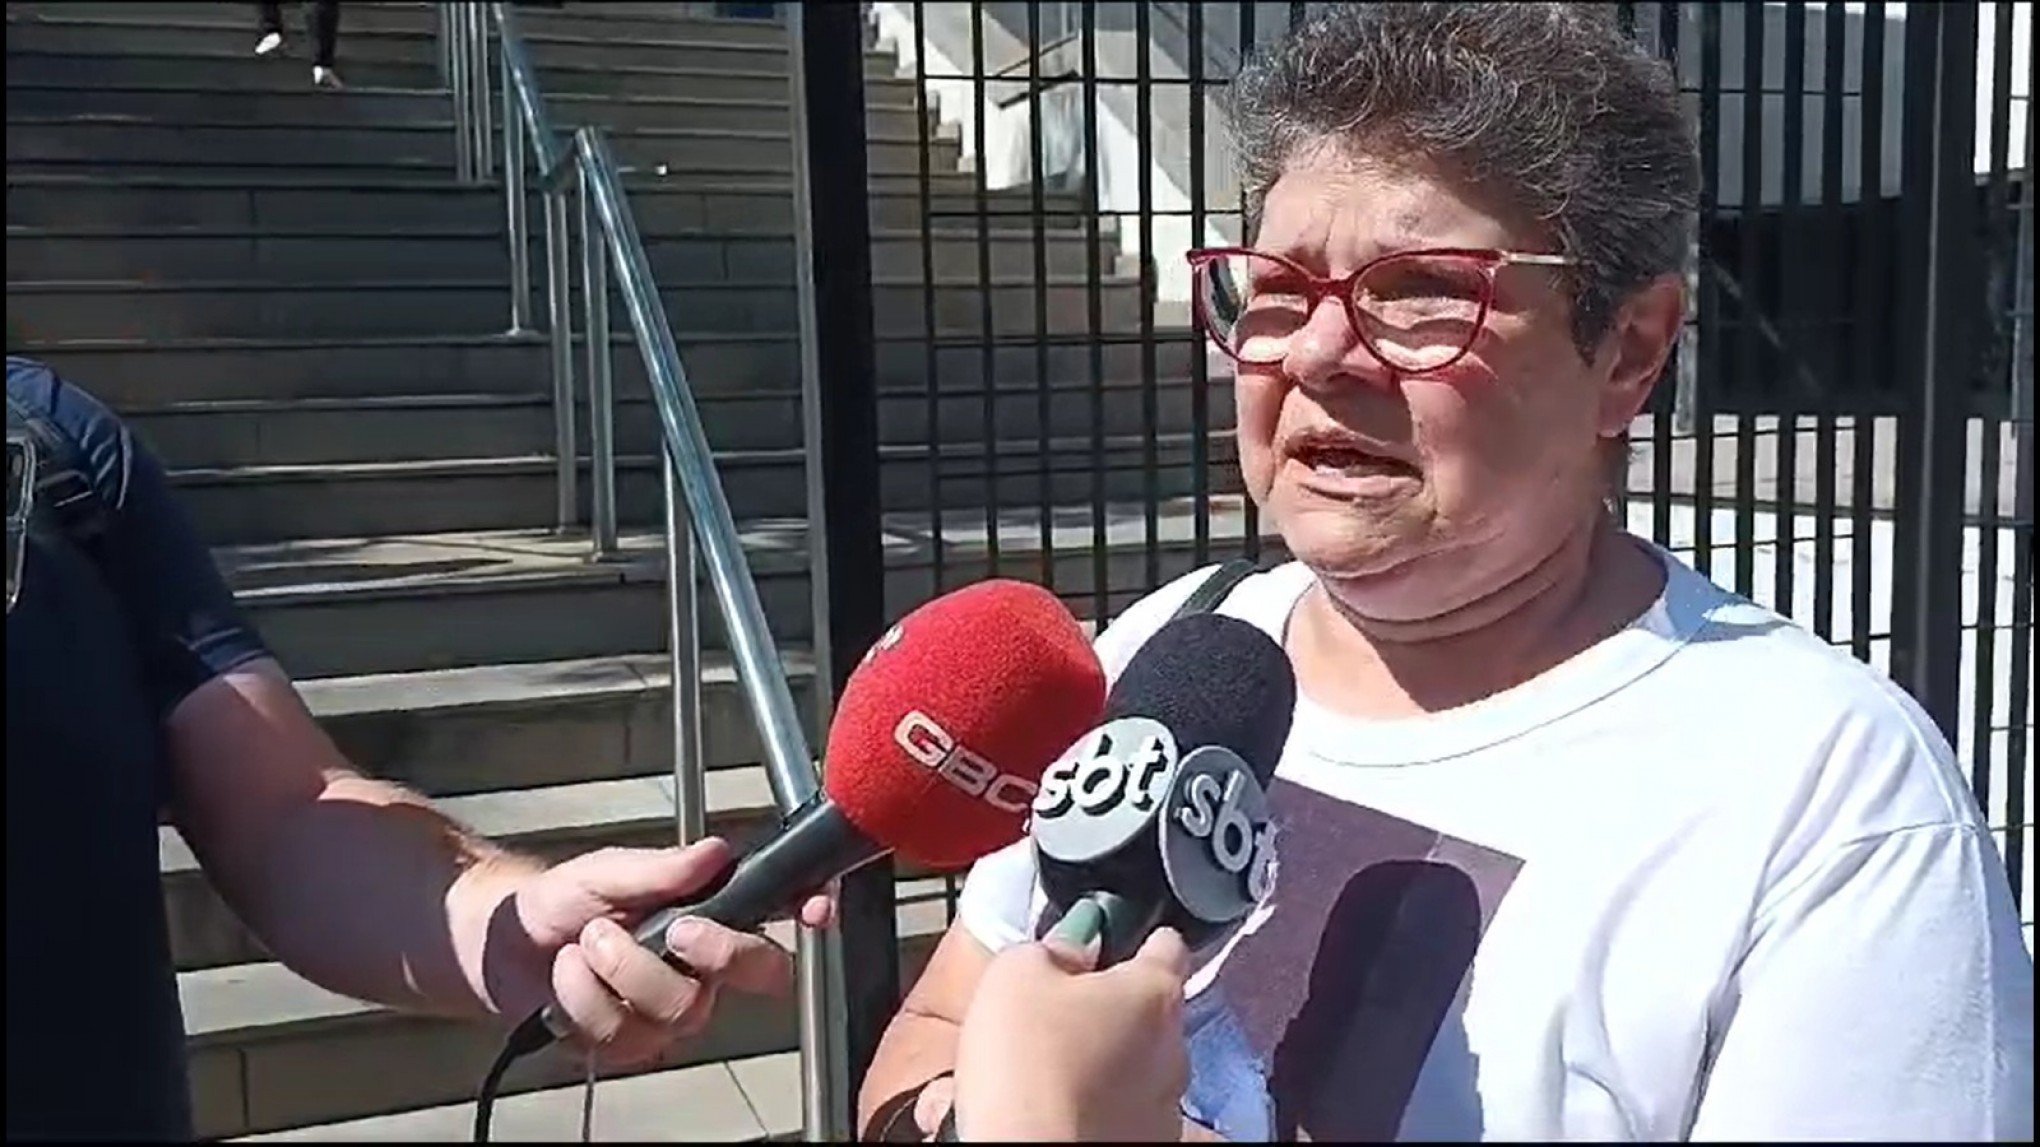 CASO DO FOTÓGRAFO MORTO: "Lacuna muito grande que ficou em nossas famílias", diz mãe de vítima em frente ao tribunal